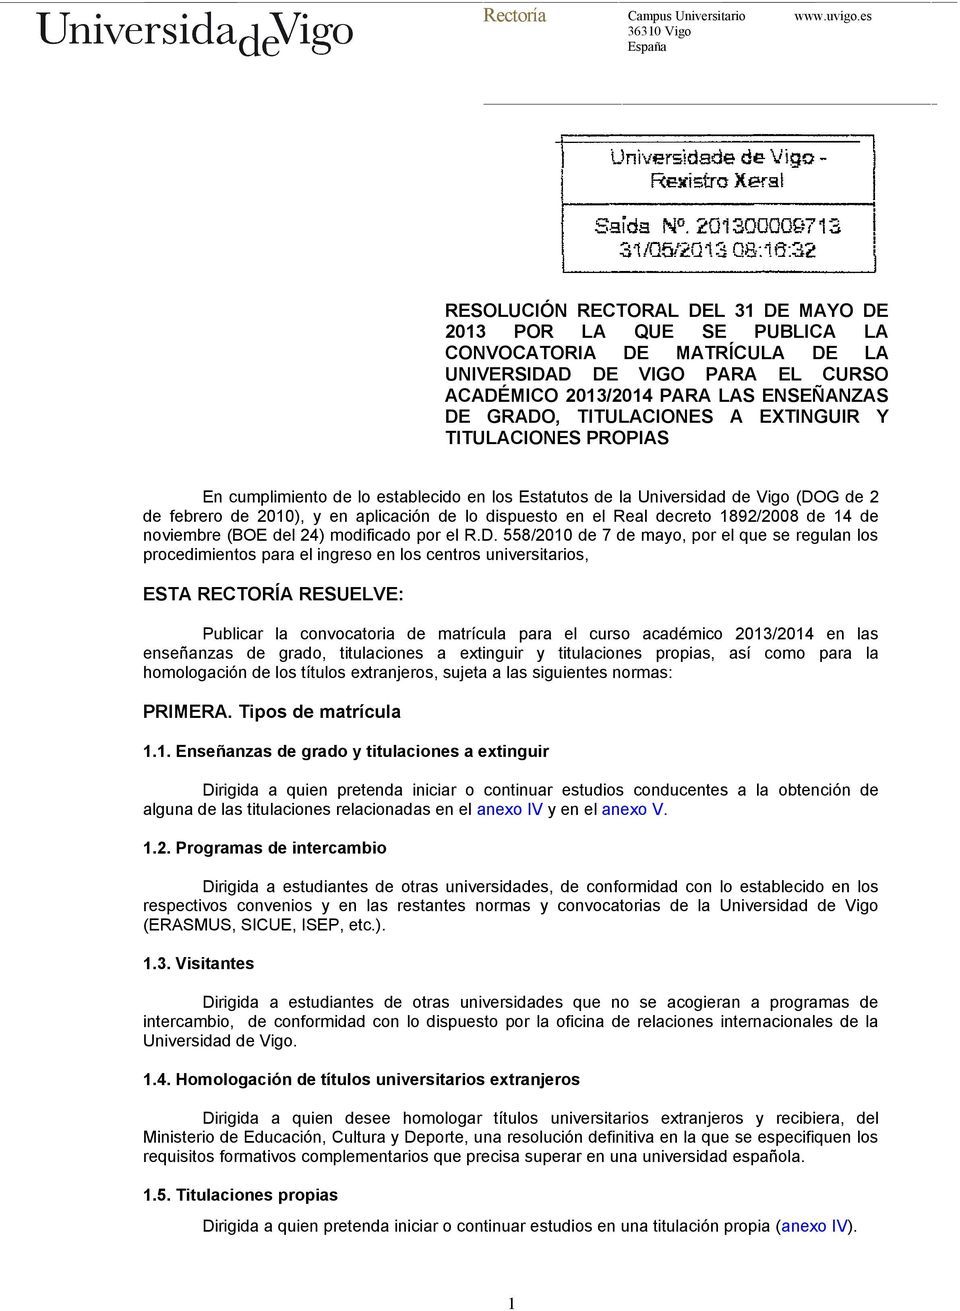 A EXTINGUIR Y TITULACIONES PROPIAS En cumplimiento de lo establecido en los Estatutos de la Universidad de Vigo (DOG de 2 de febrero de 2010), y en aplicación de lo dispuesto en el Real decreto